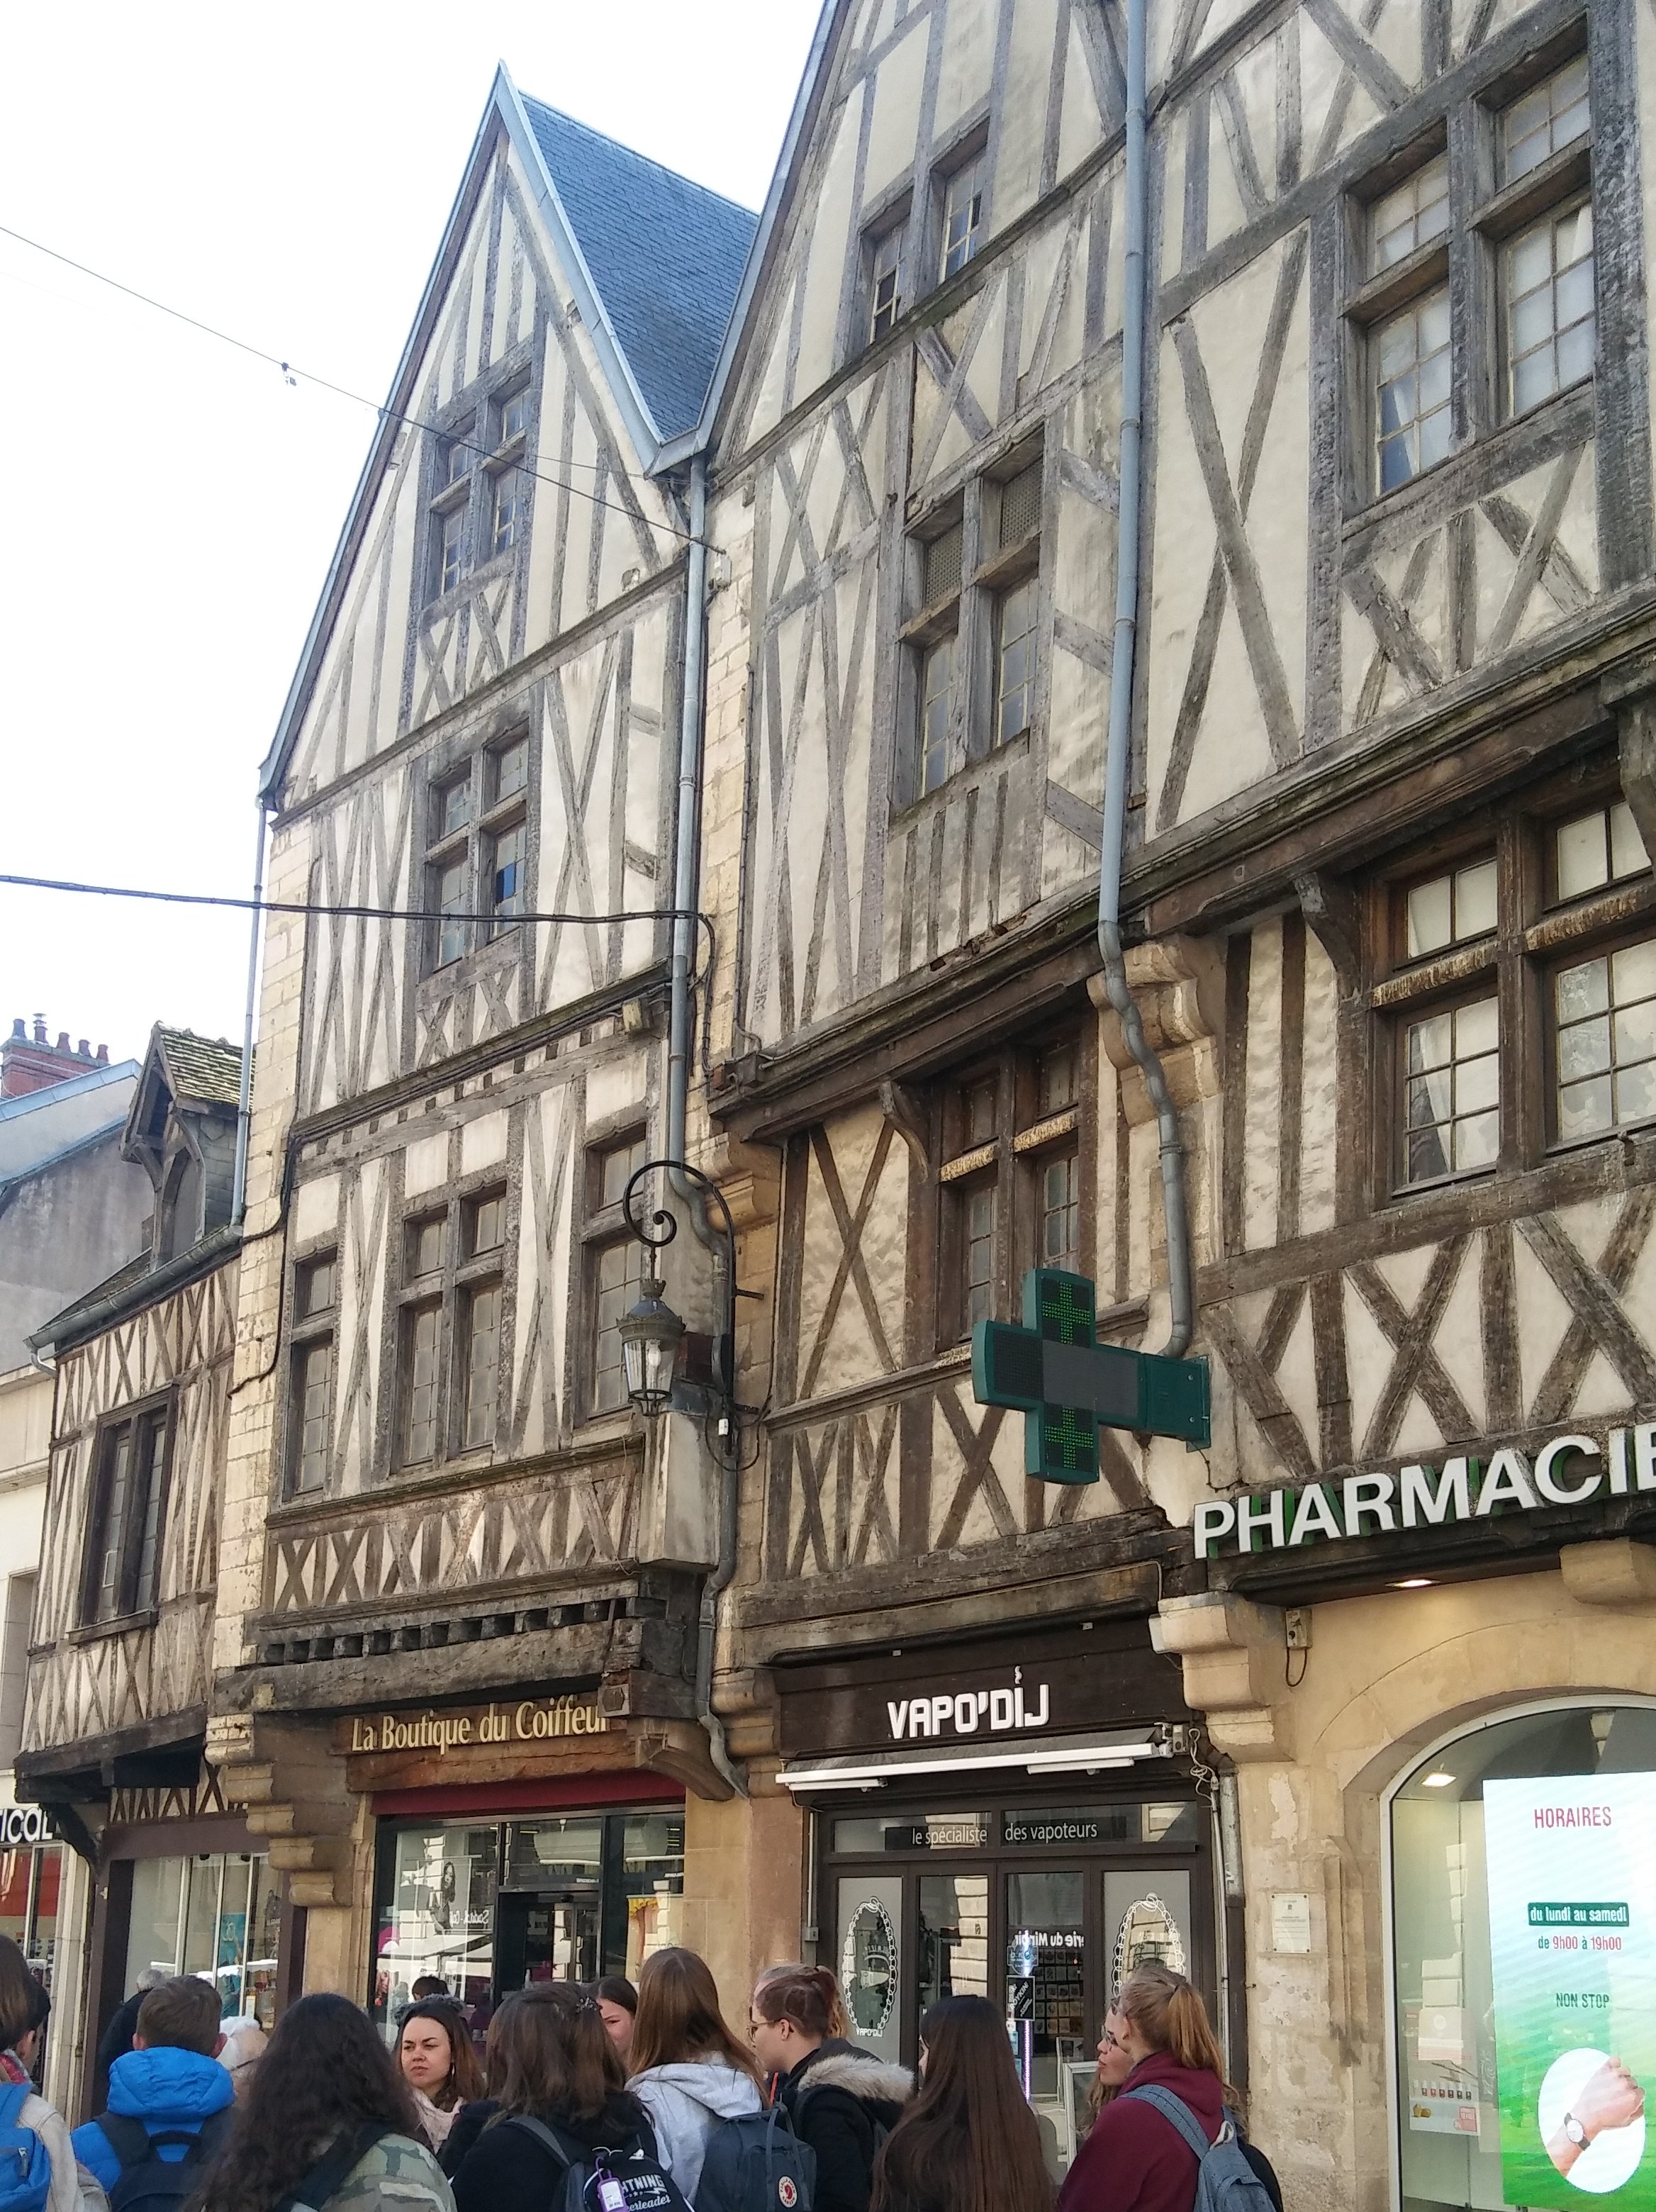 SchülerInnen in der Altstadt von Dijon